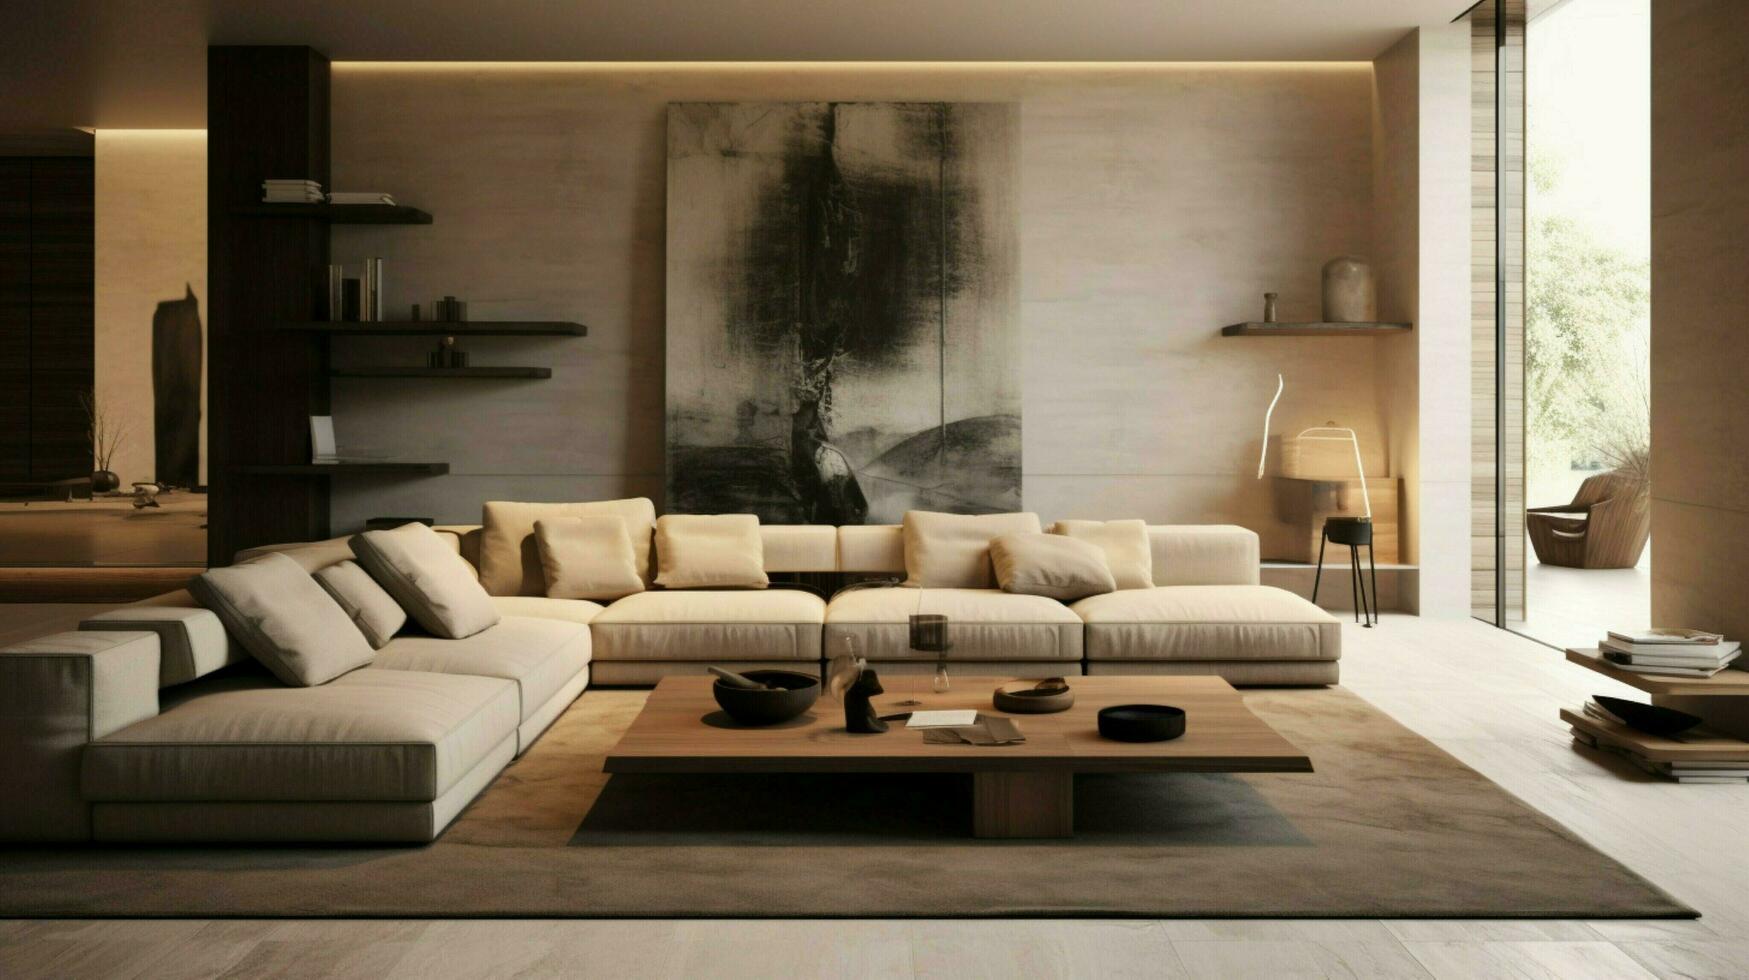 modern elegantie in een comfortabel leven ruimte foto